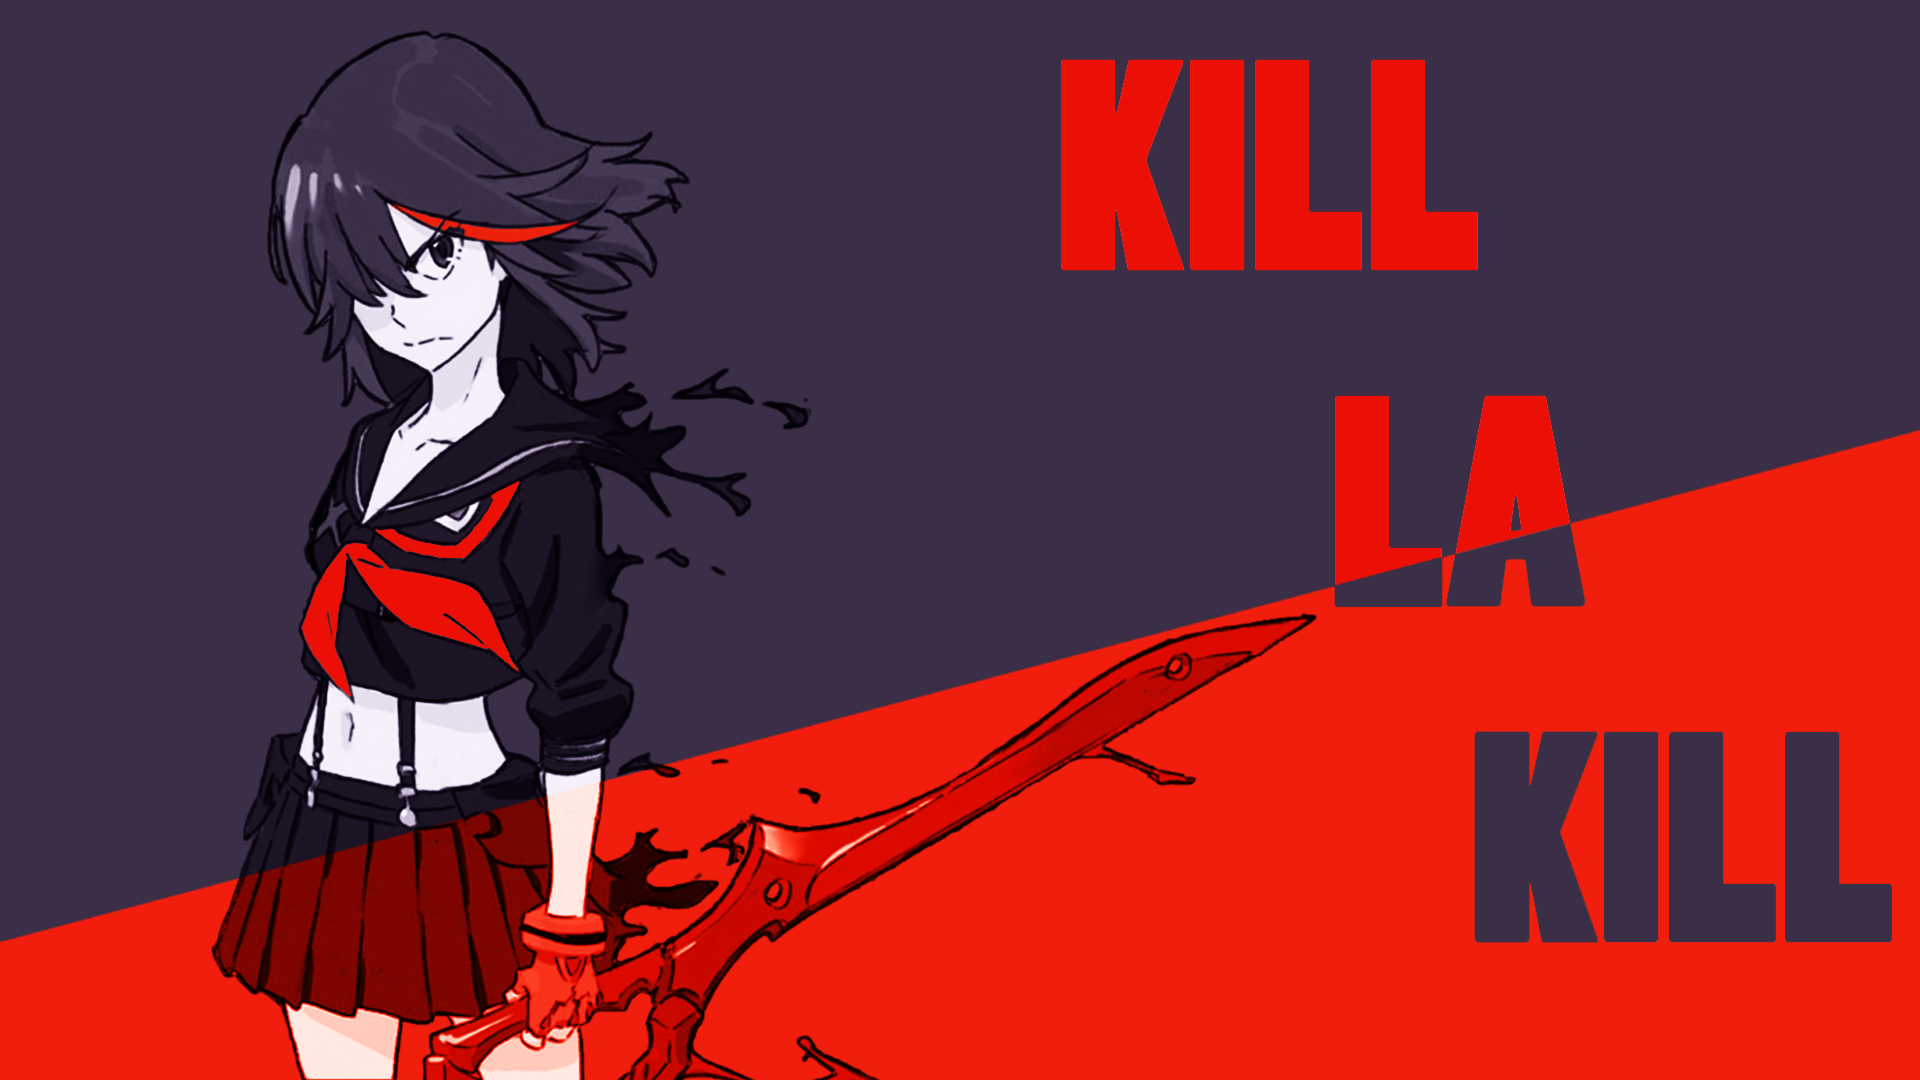 kill la kill free online dubbed